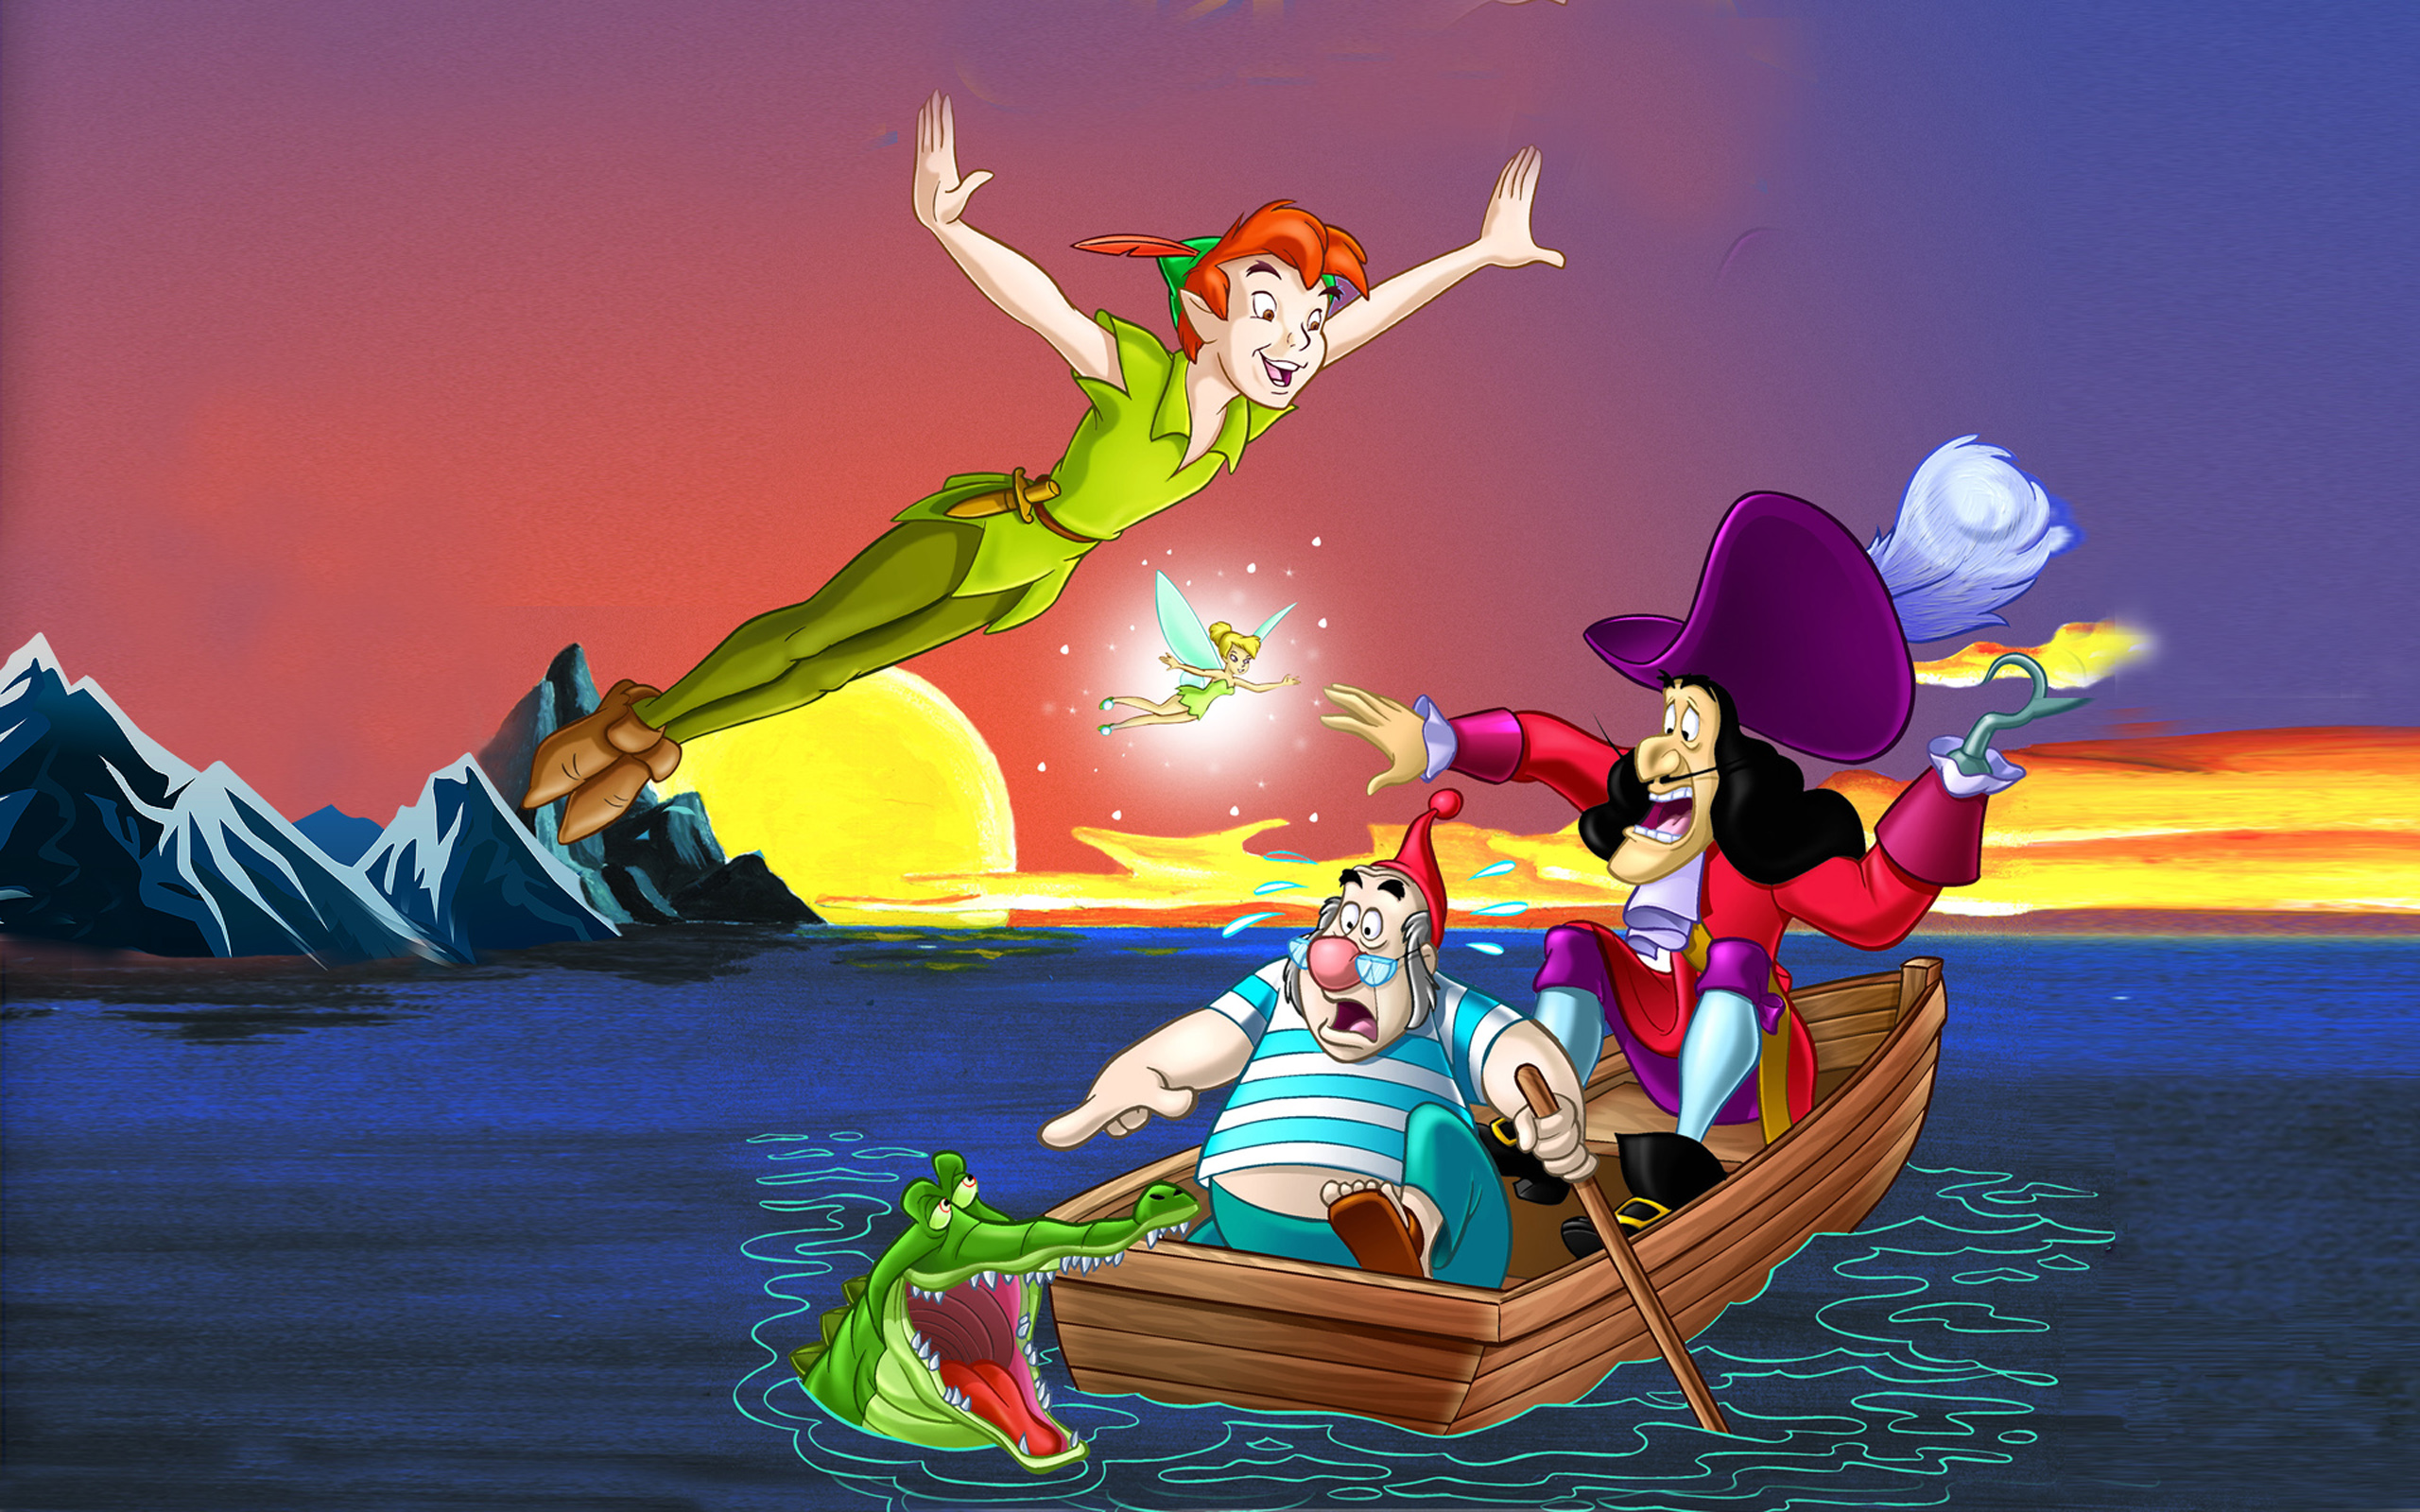 Download Peter Pan Cartoon Cartoon Captain Hook Smee And Tick Tock The Croc...